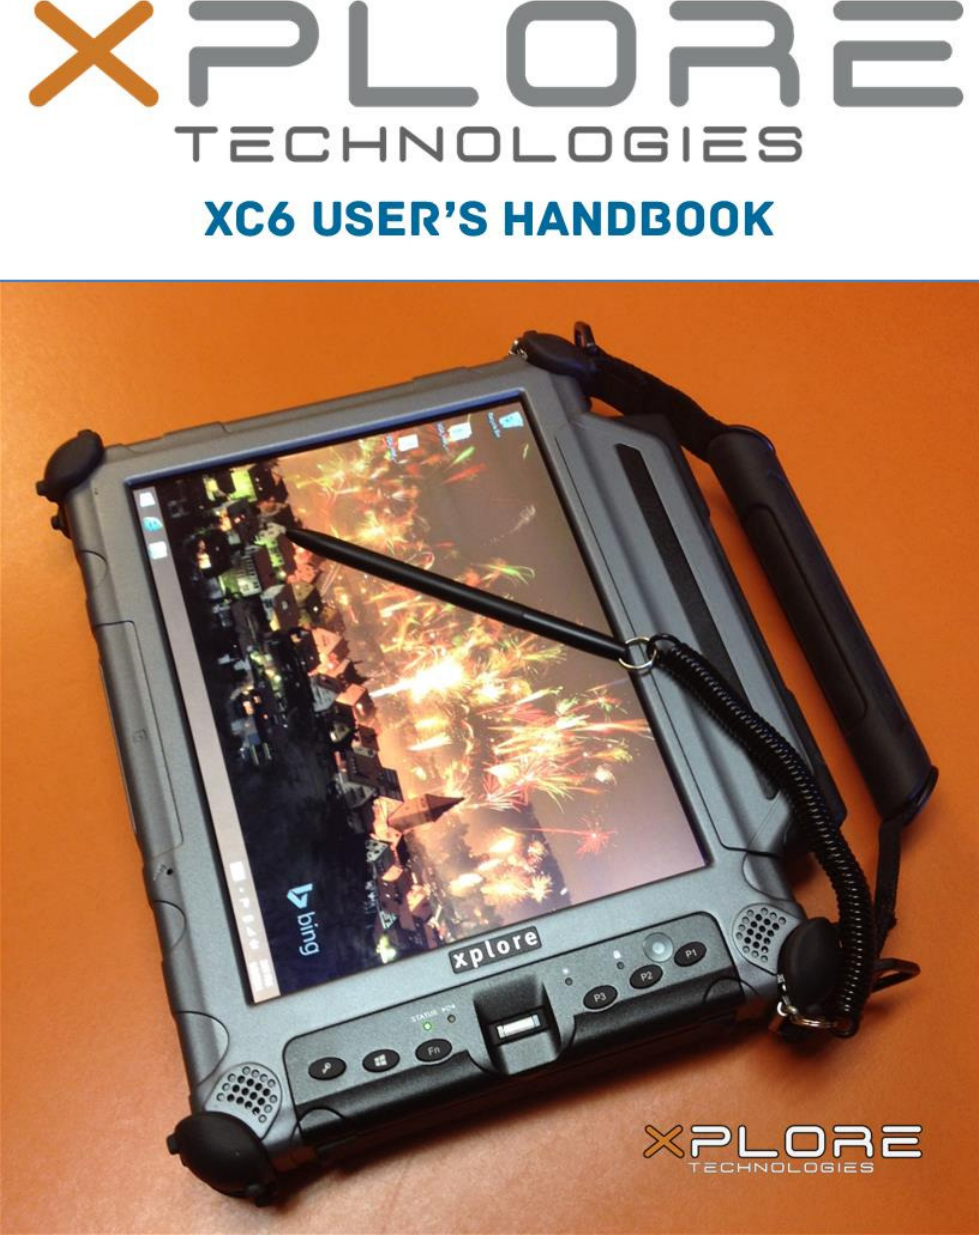   XC6 User’s Handbook 1                                                    